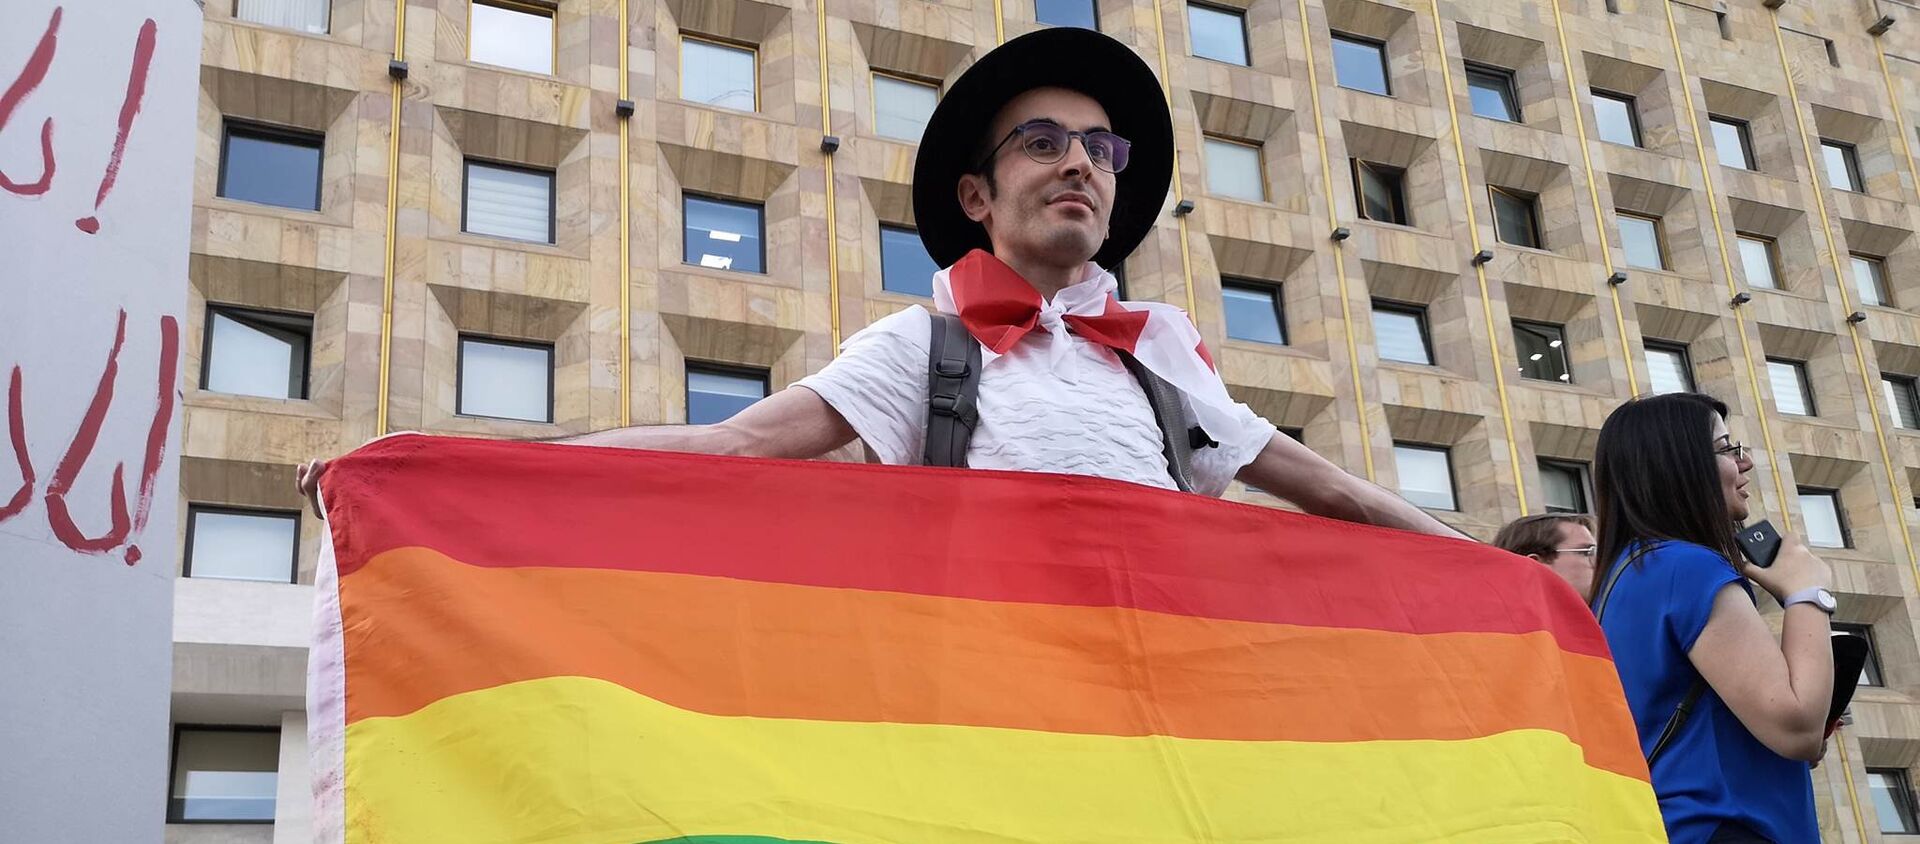 Акция защитников ЛГБТ-сообщества у здания правительства Грузии  - Sputnik Грузия, 1920, 14.05.2021